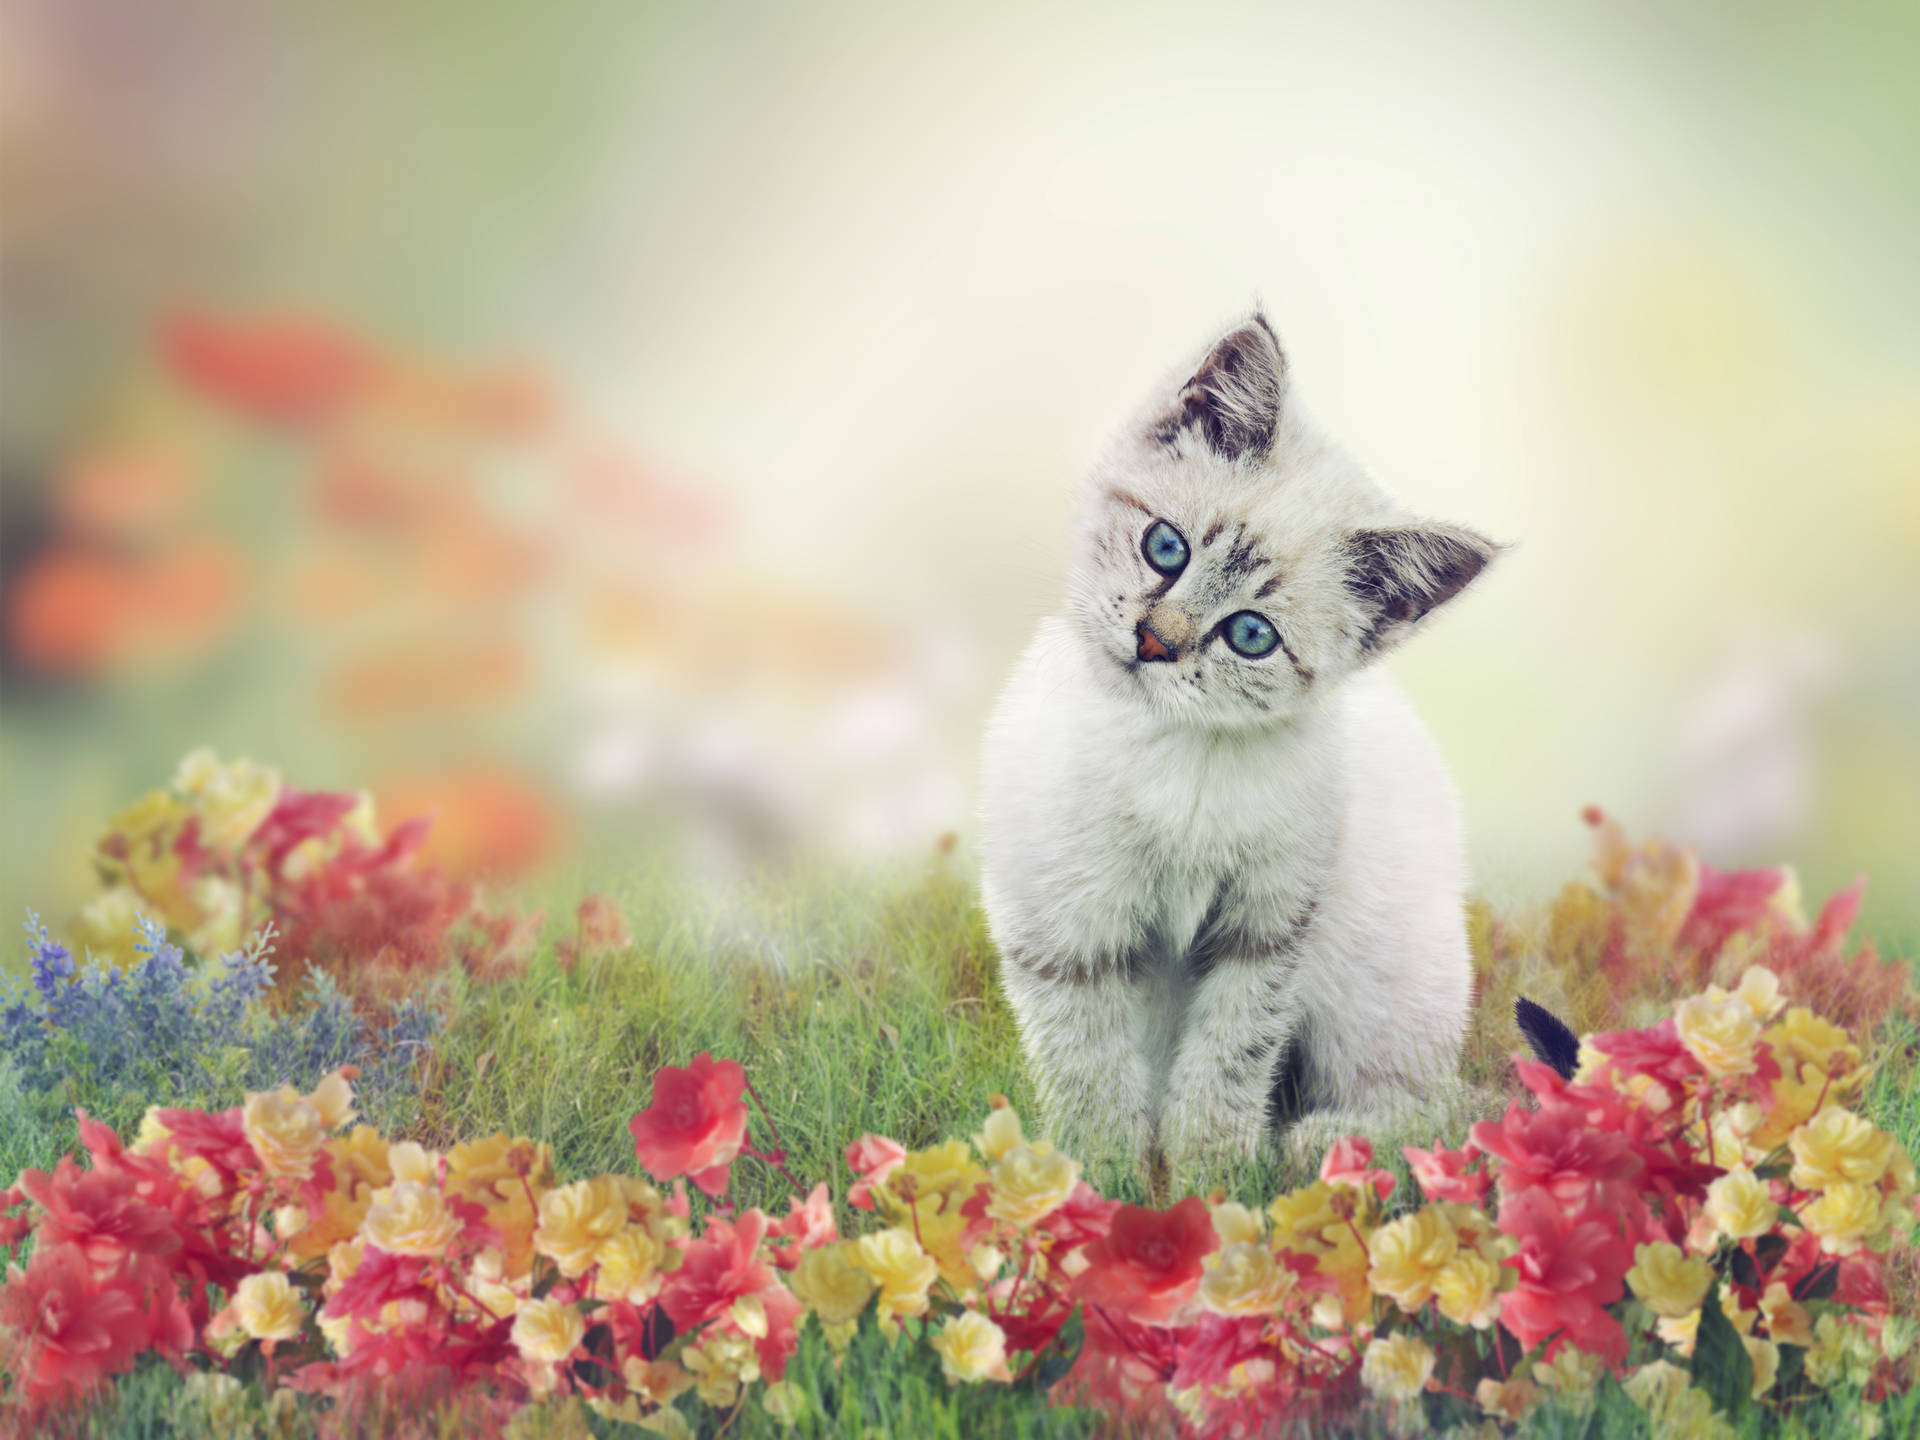 Cute Cat On Flower Field Background